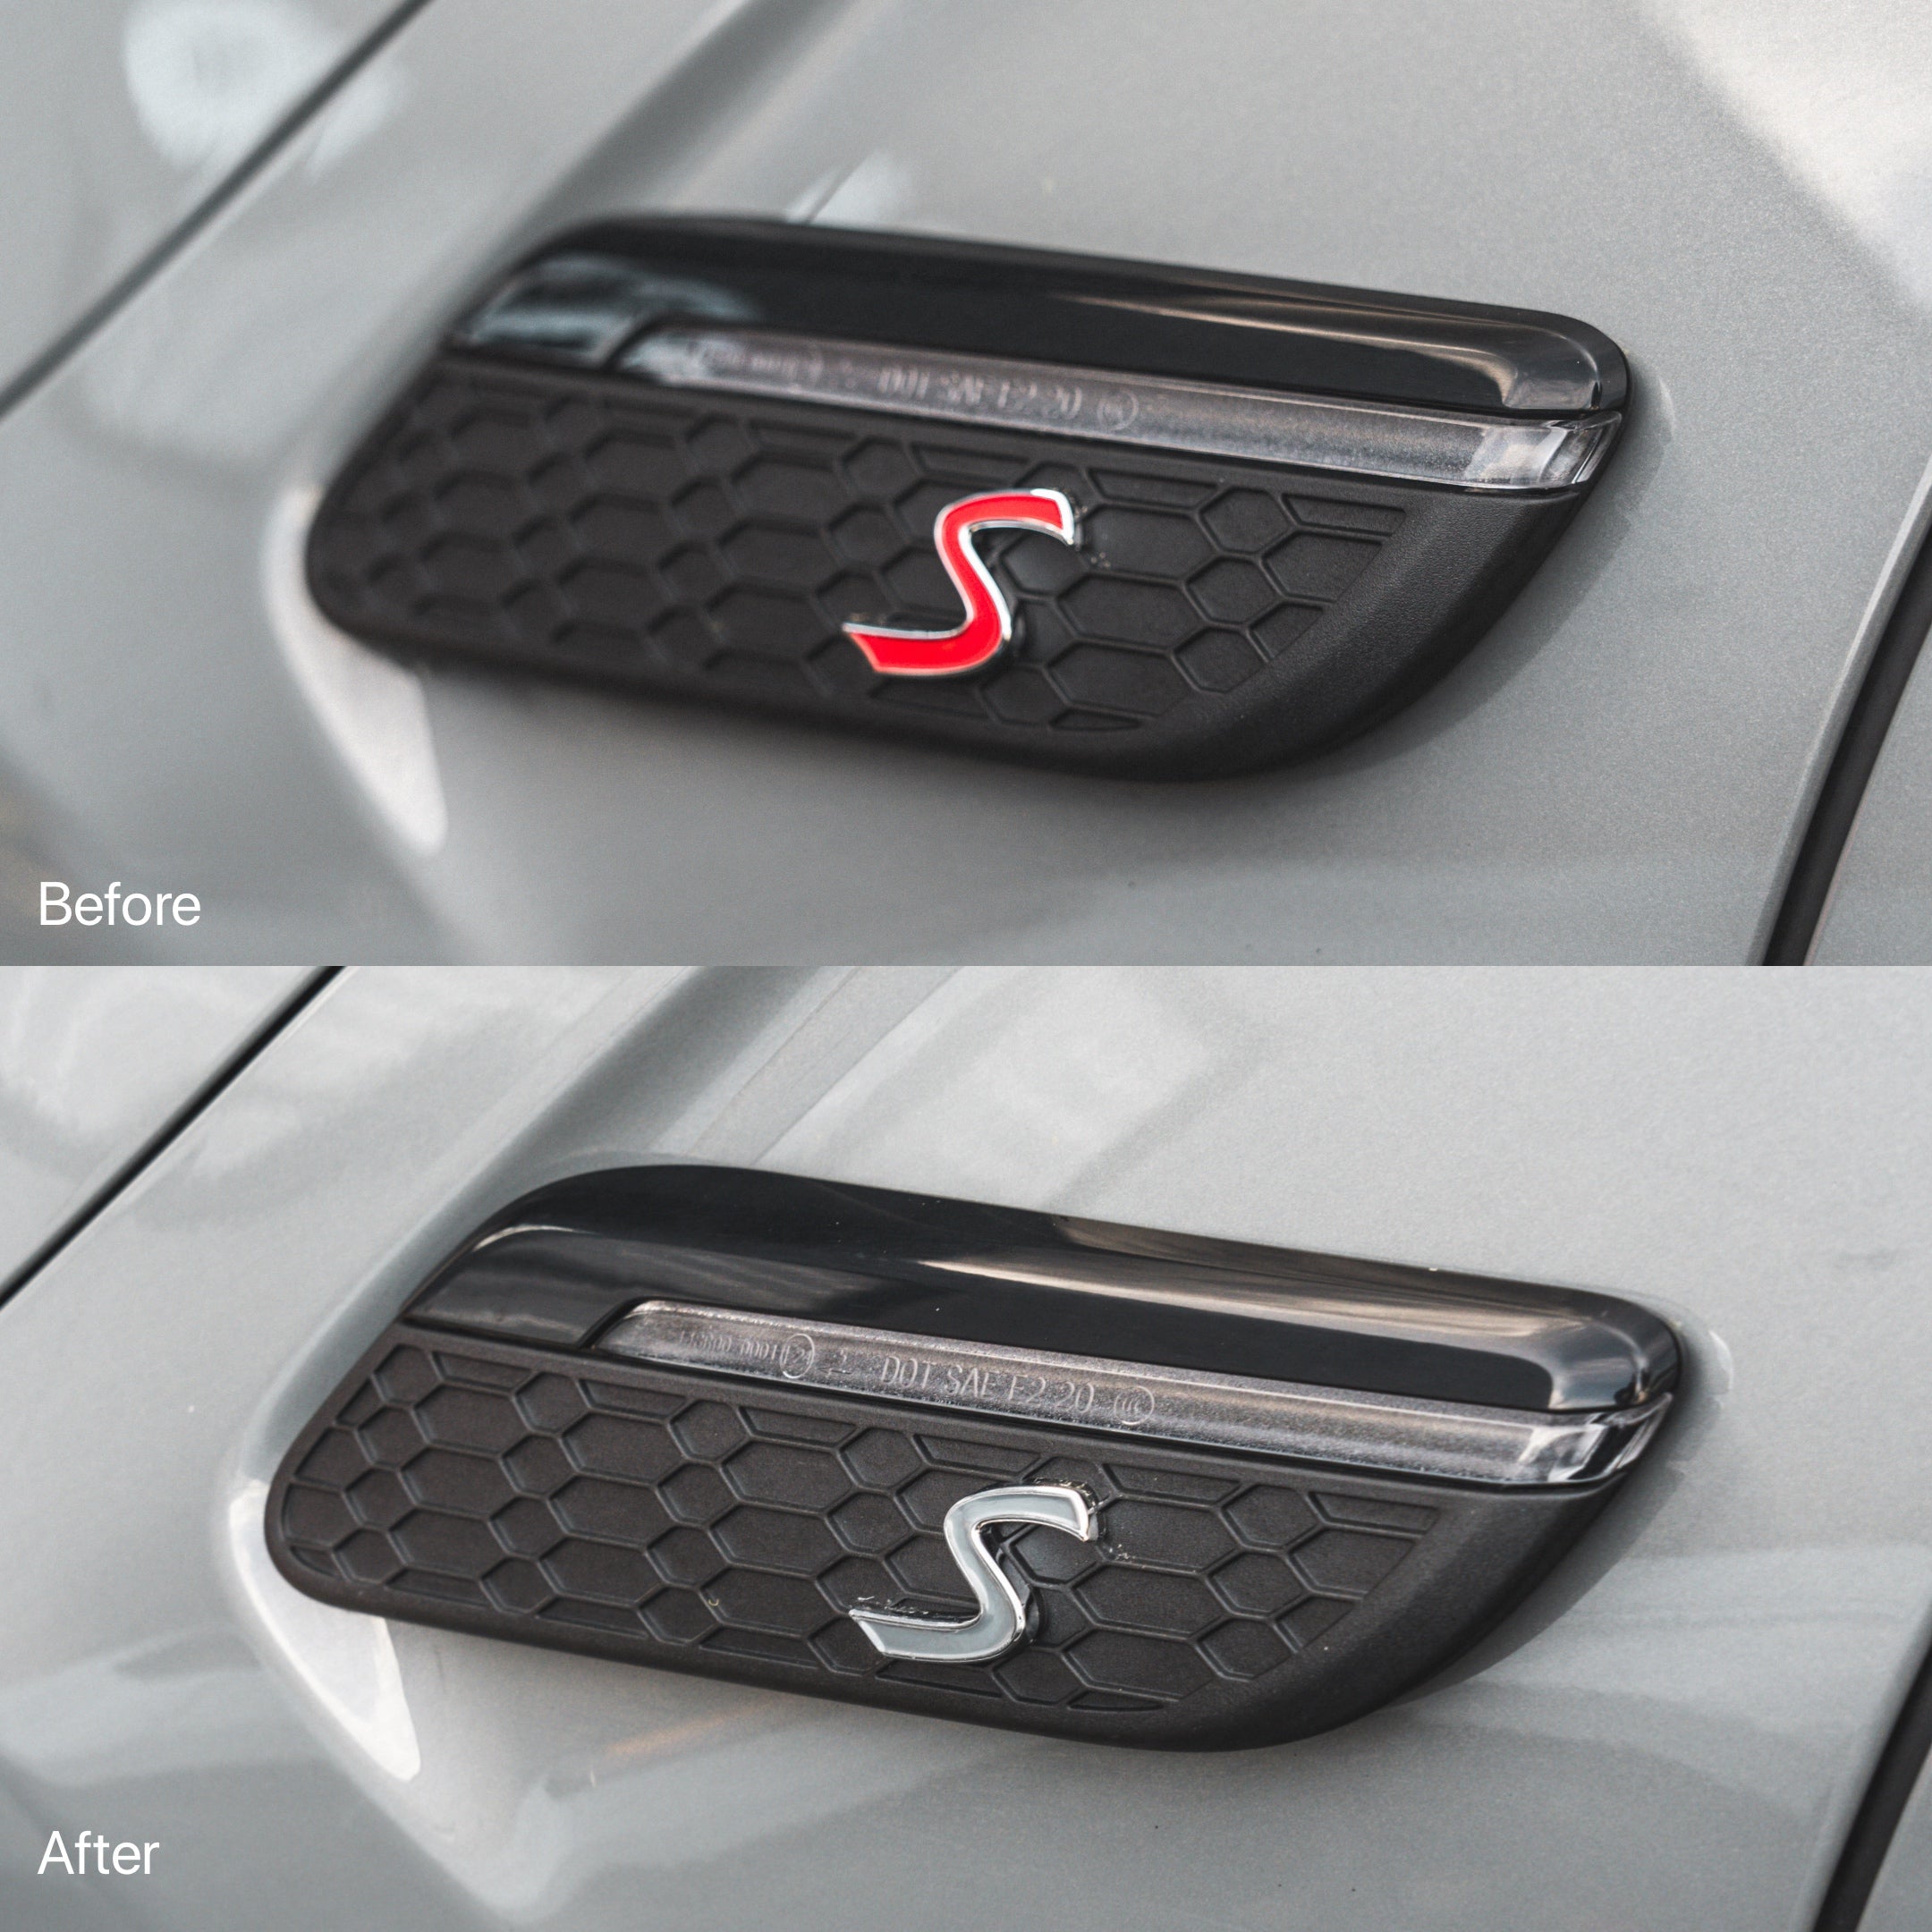 MINI F-Series Cooper S Side LCI2 Accent Decal / Sticker